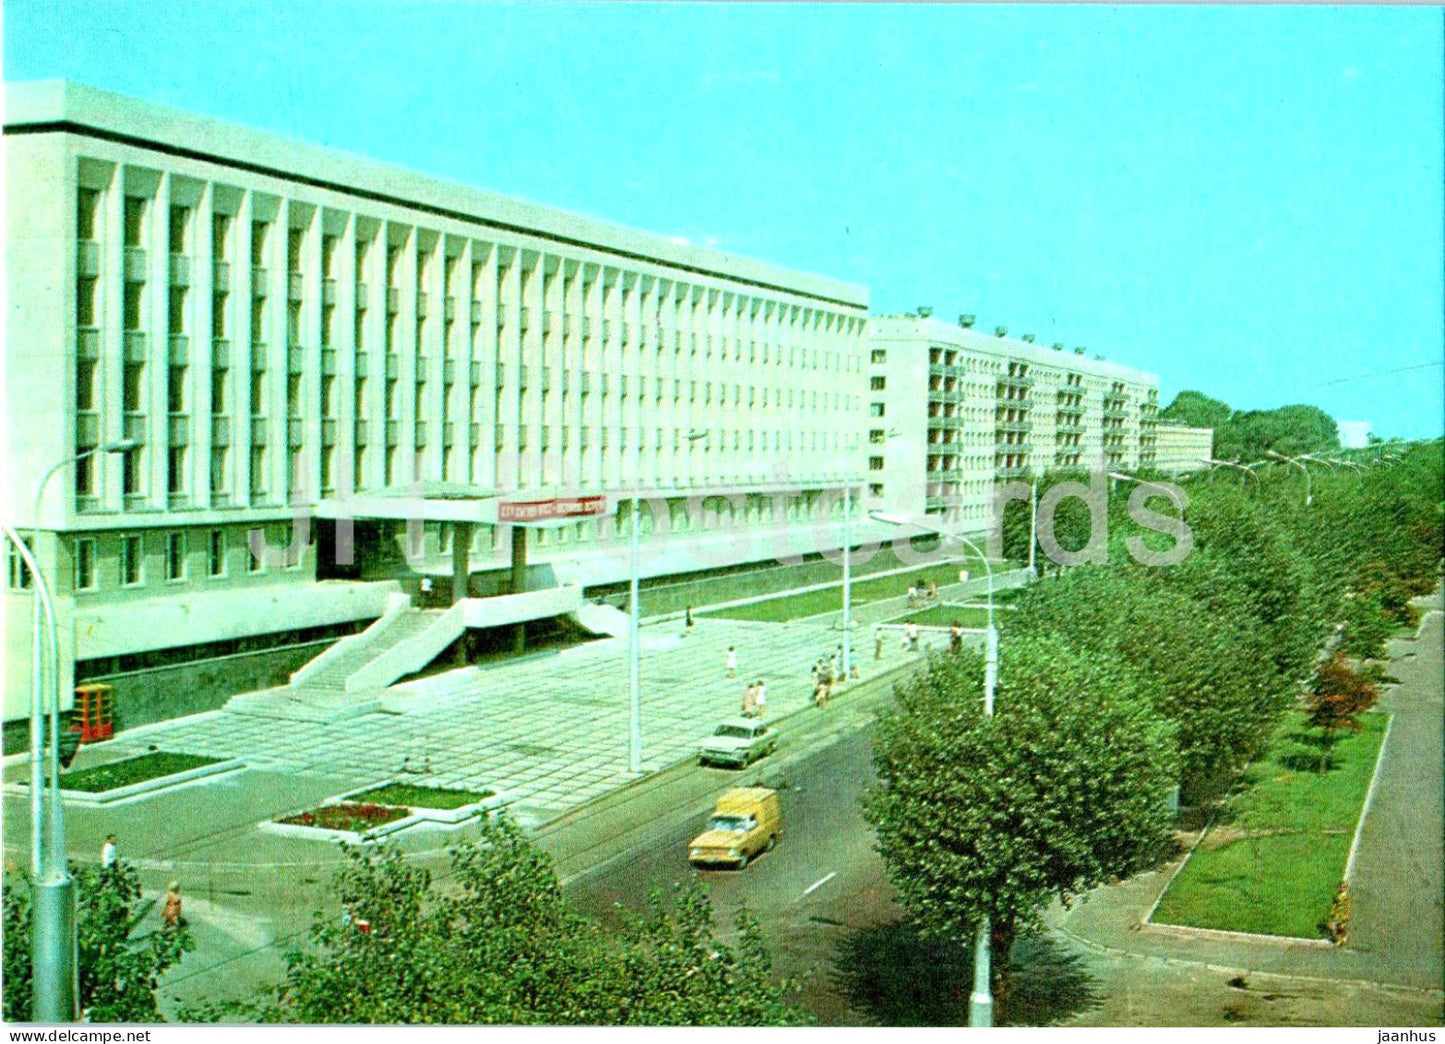 Gomel - university - 1976 - Belarus USSR - unused - JH Postcards